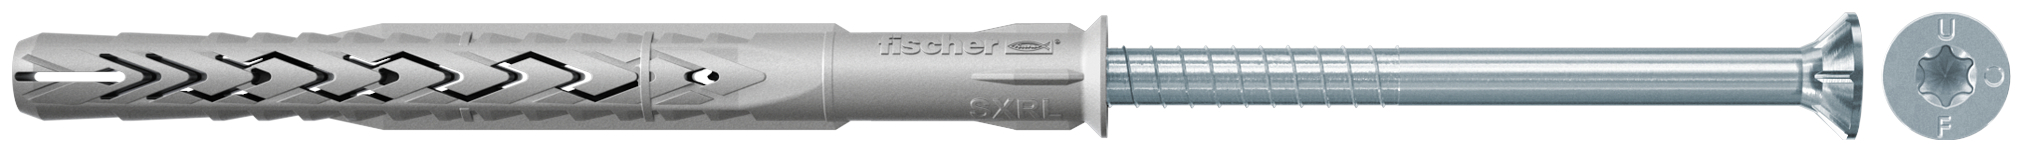 fischer Tasselli prolungati SXRL 14X330 T (1 Pz.) Tassello prolungato in nylon con marcatura CE con vite premontata T.S.P. impronta torx.